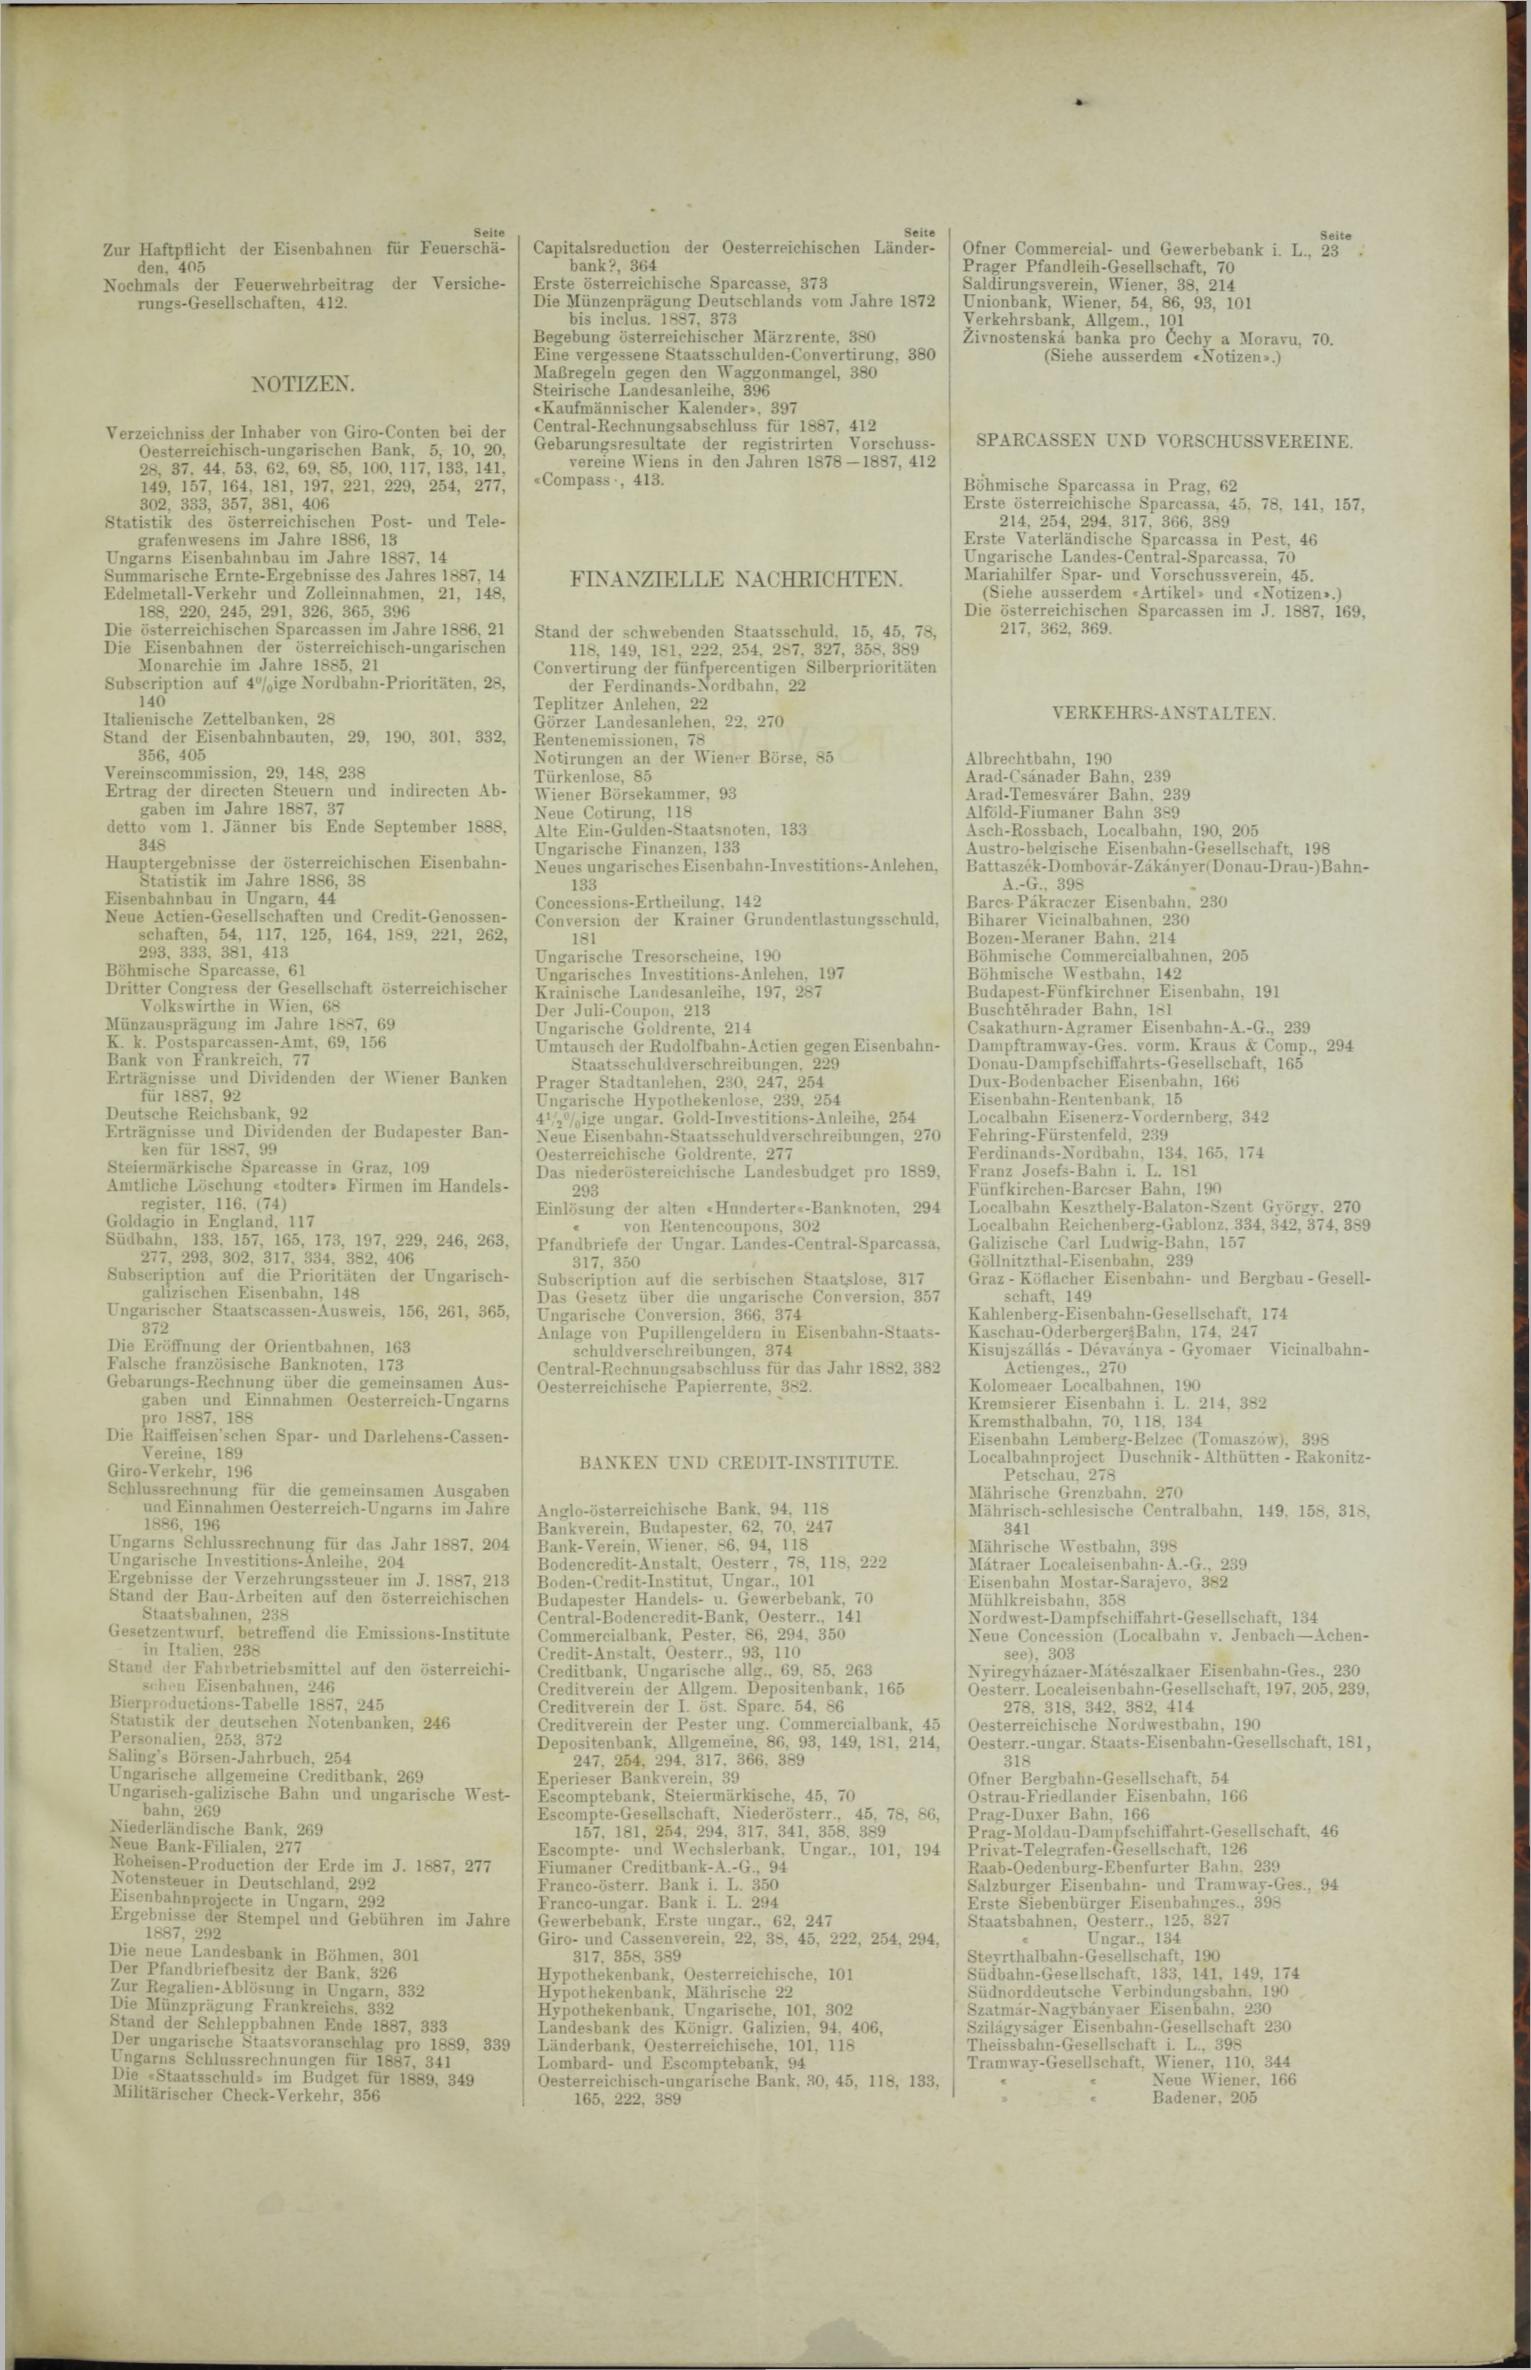 Der Tresor 09.08.1888 - Seite 11